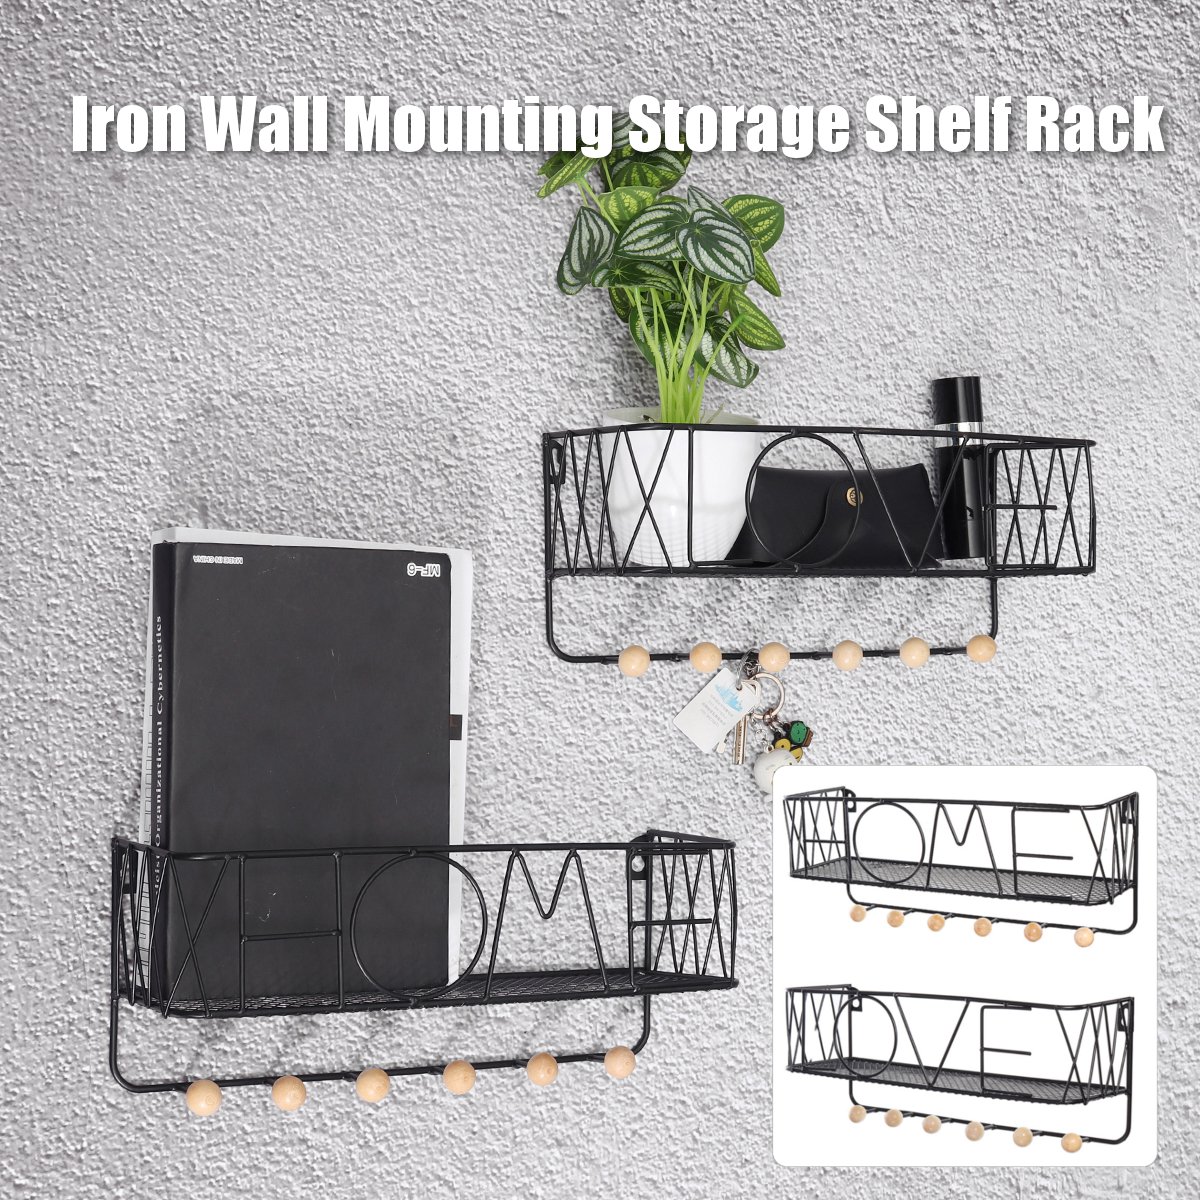 Iron-Wall-Mounting-Shelf-Hook-Storage-Rack-Hanging-Ledge-Holder-Home-Decoration-1684627-2